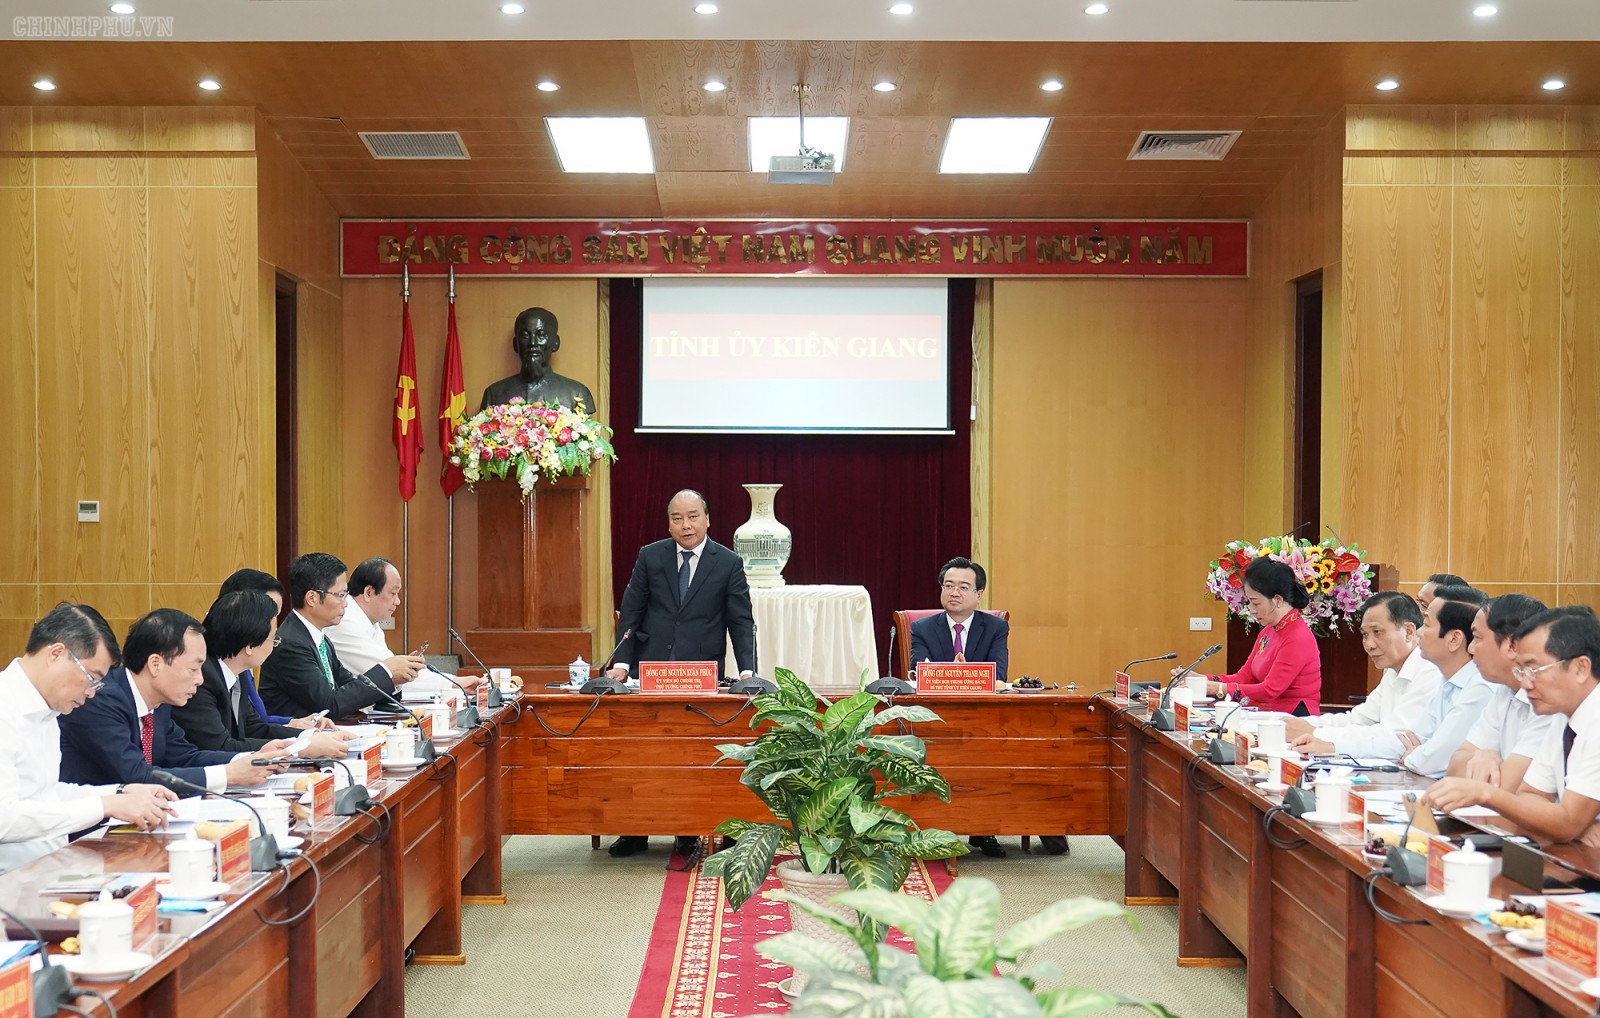 Thủ tướng làm việc với lãnh đạo chủ chốt của tỉnh Kiên Giang - Ảnh: VGP/Quang Hiếu